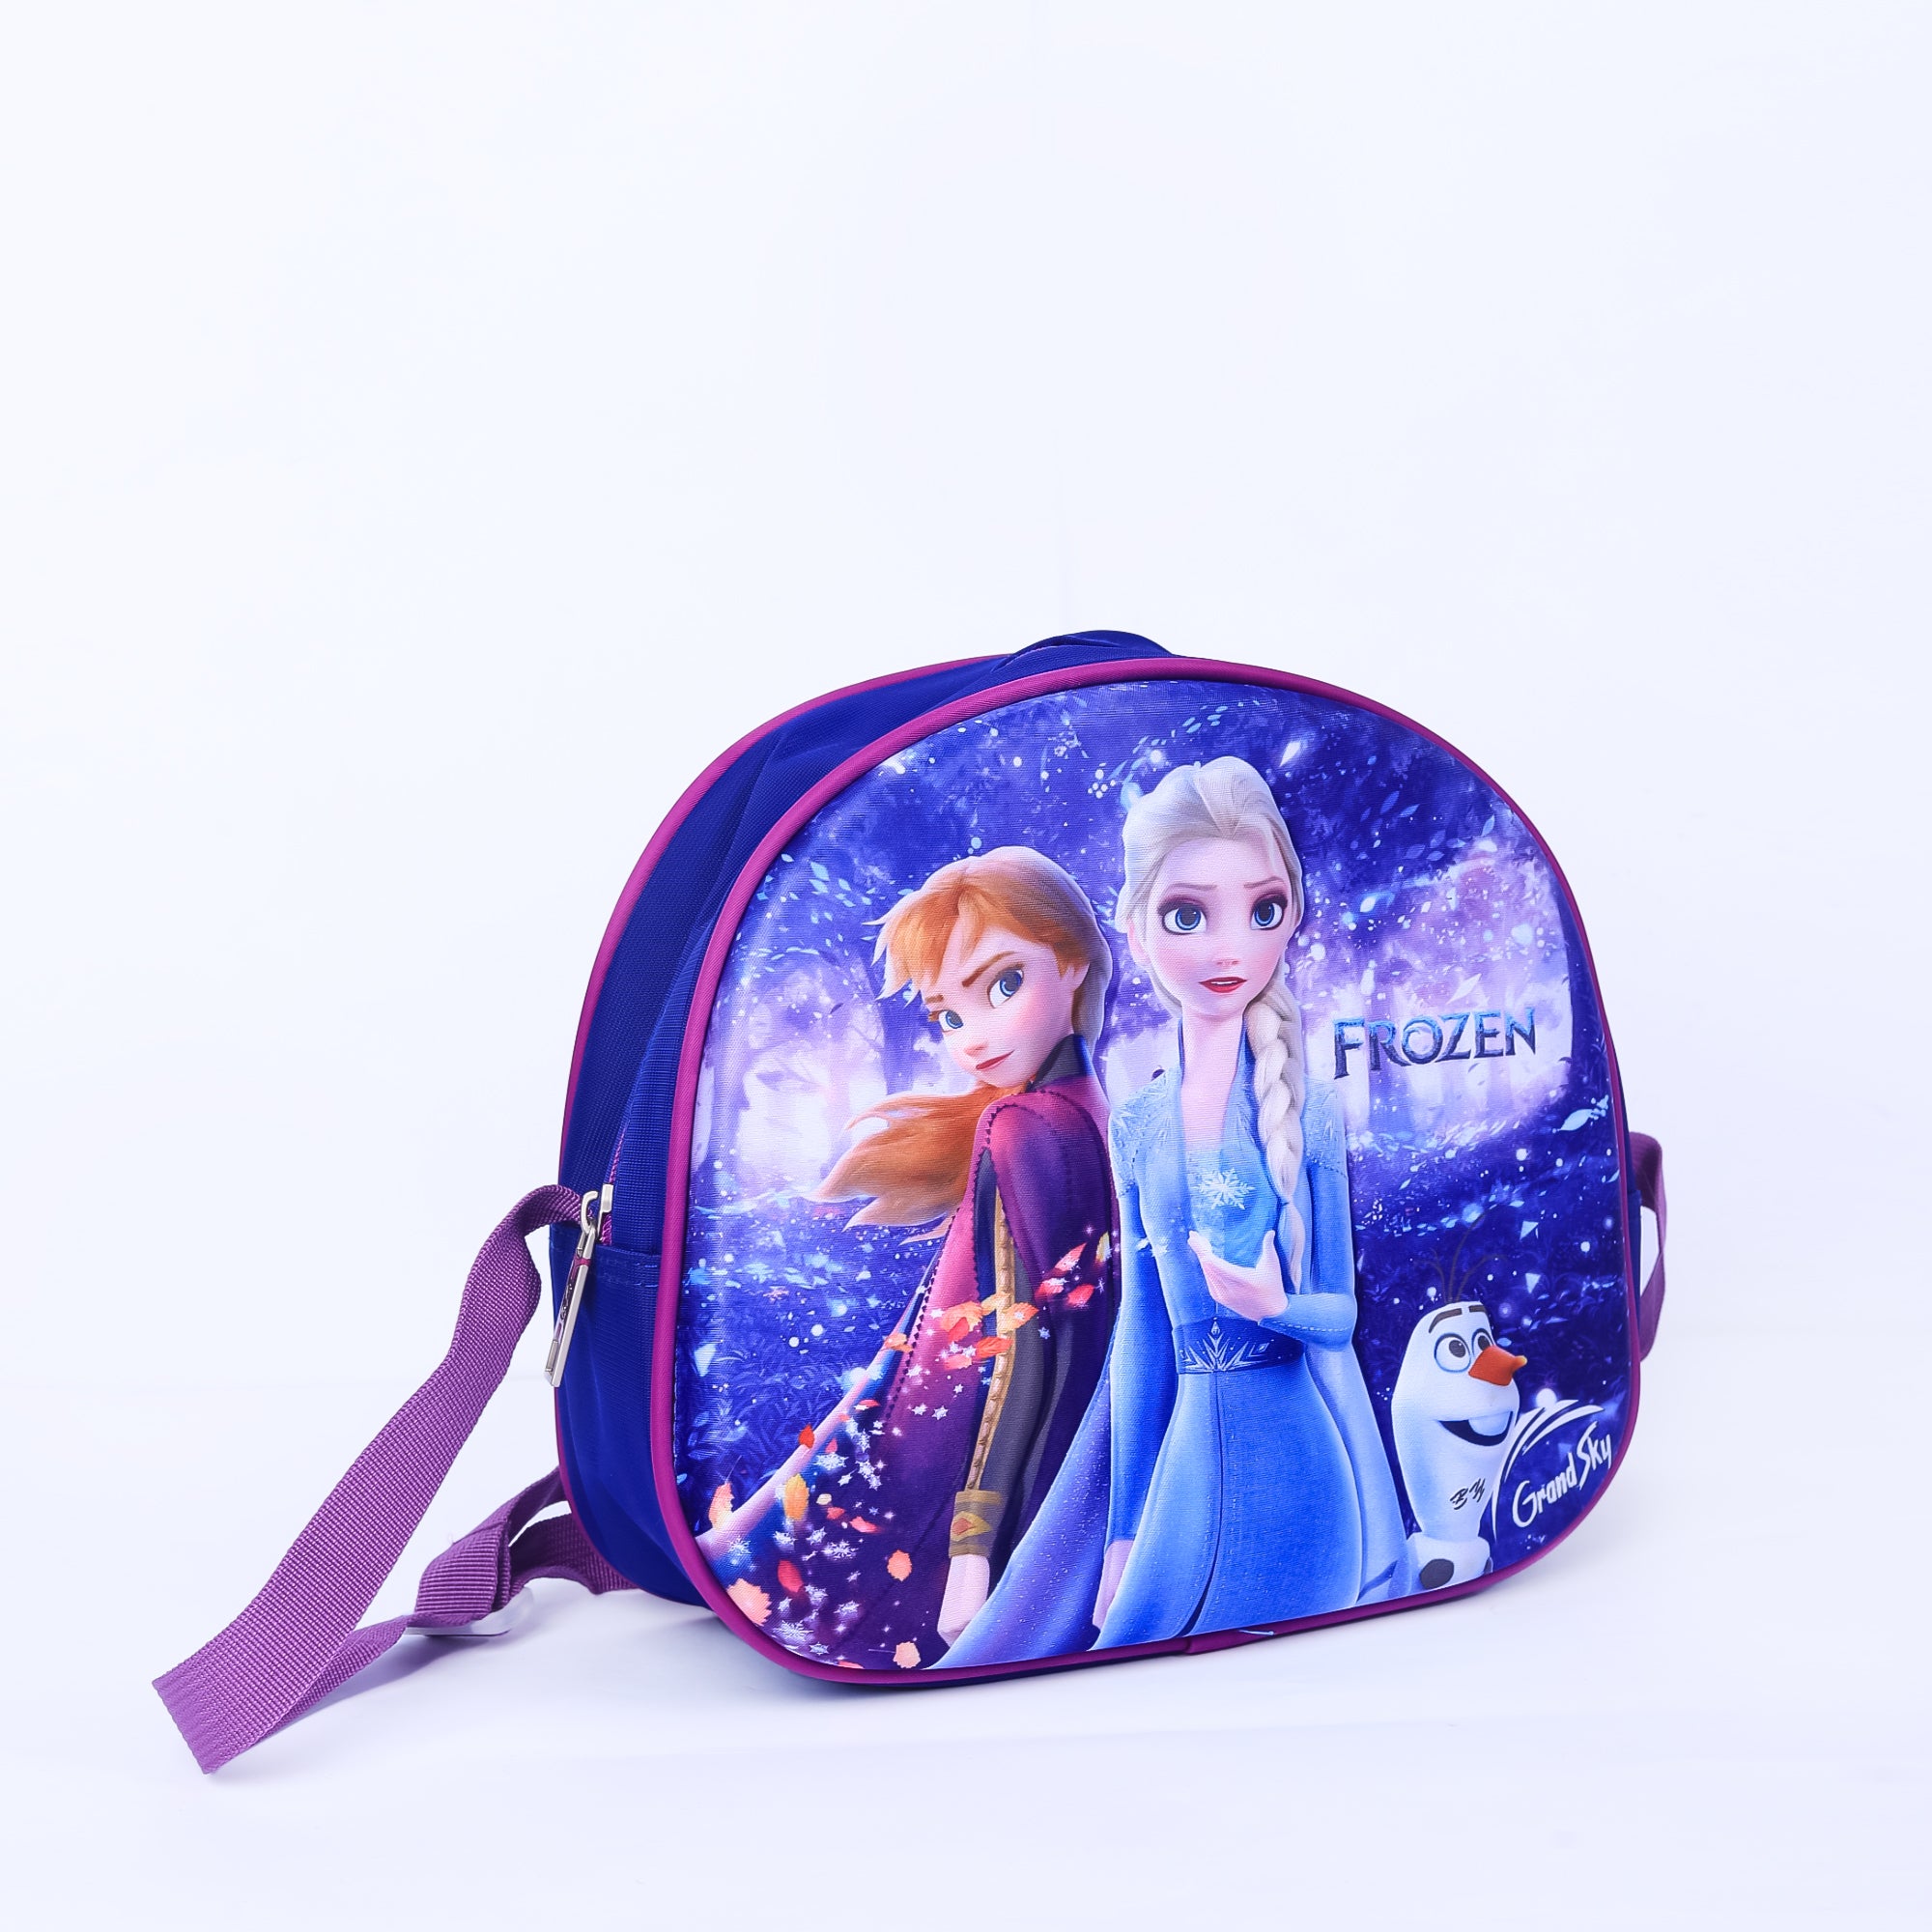 Frozen Trolly Bag For Kids 14 INCH